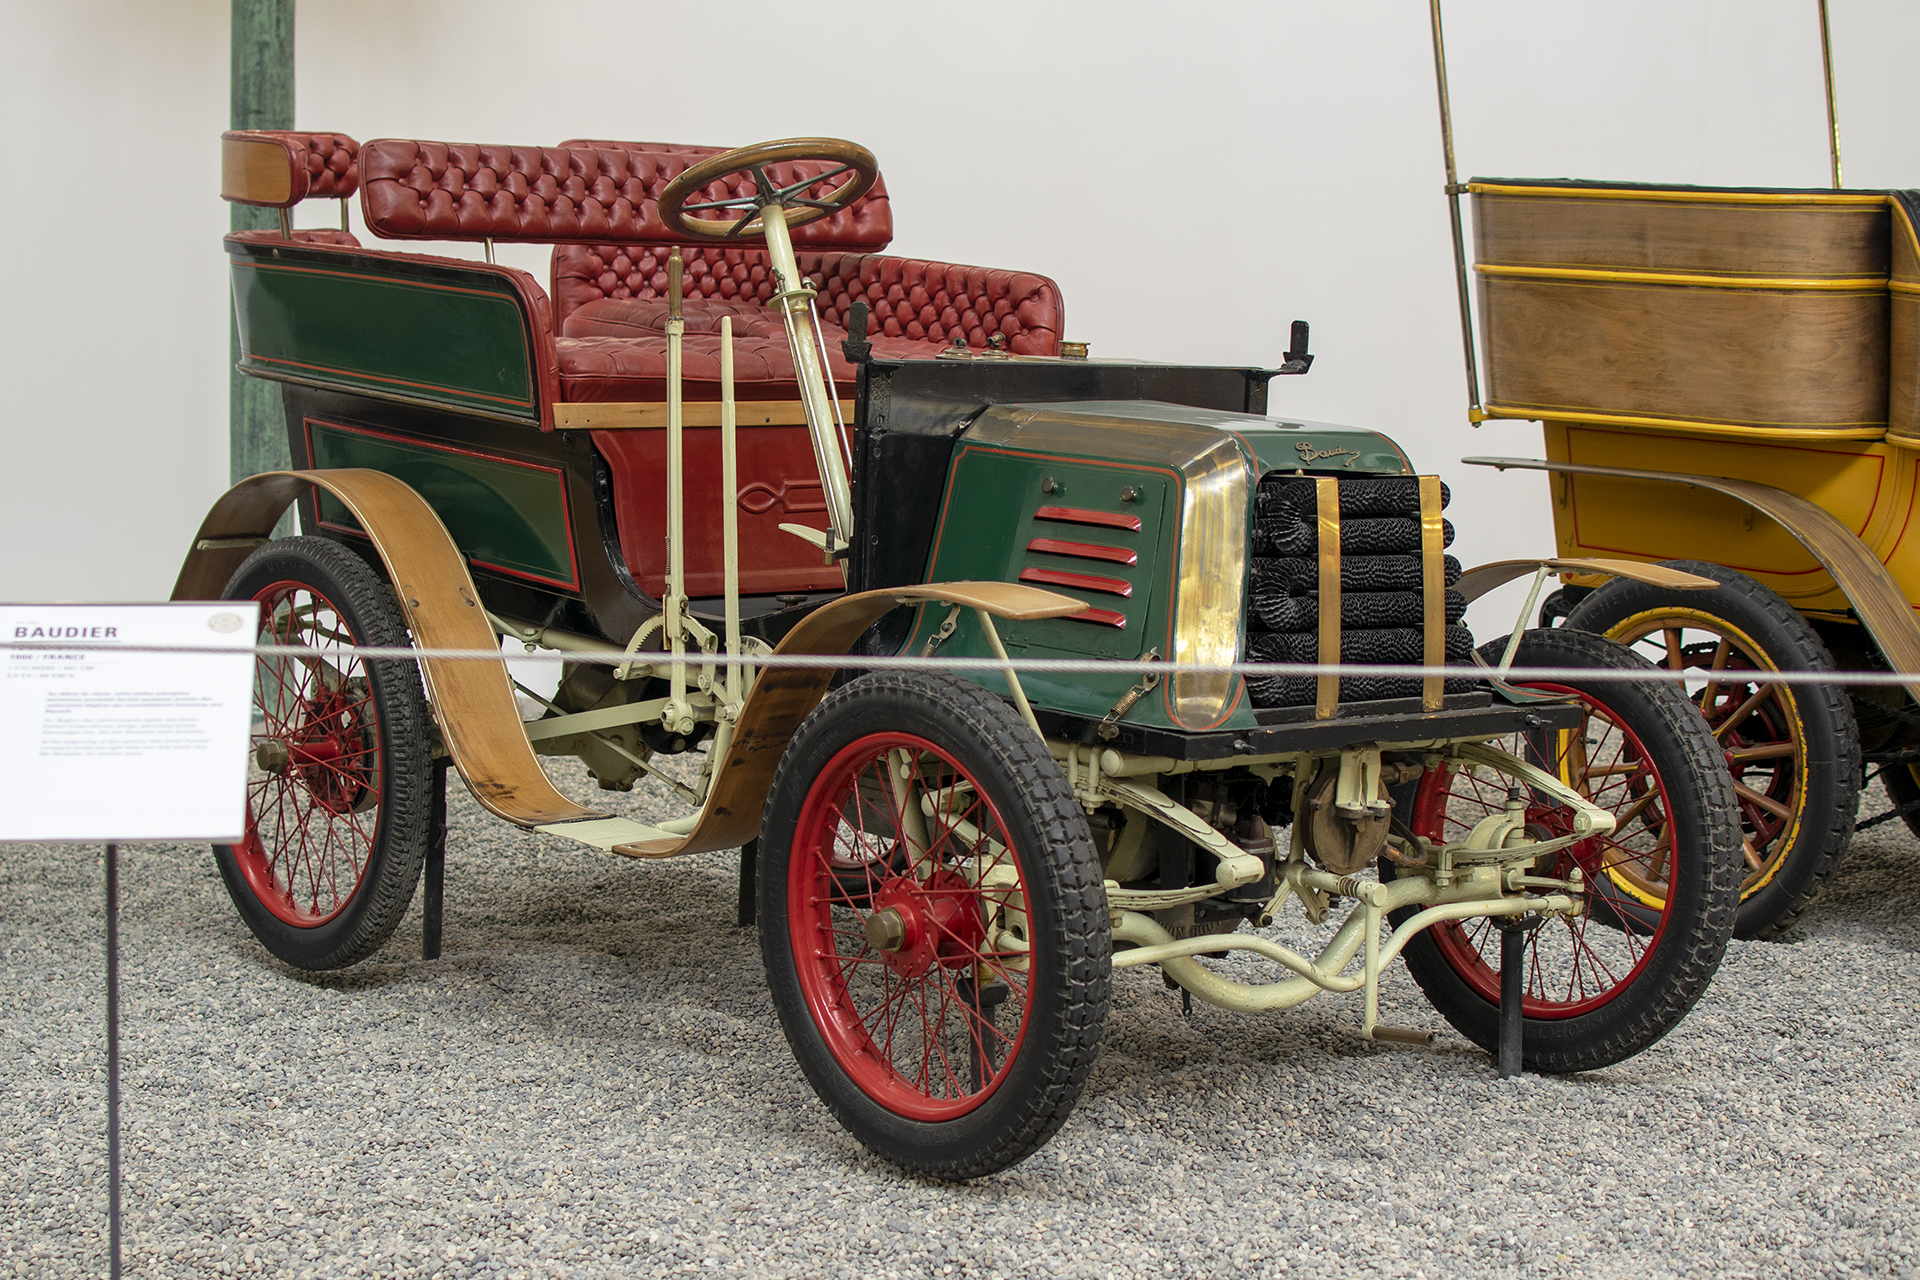  Baudier 3HP 1900 - Cité de l'automobile, Collection Schlumpf, Mulhouse, 2020